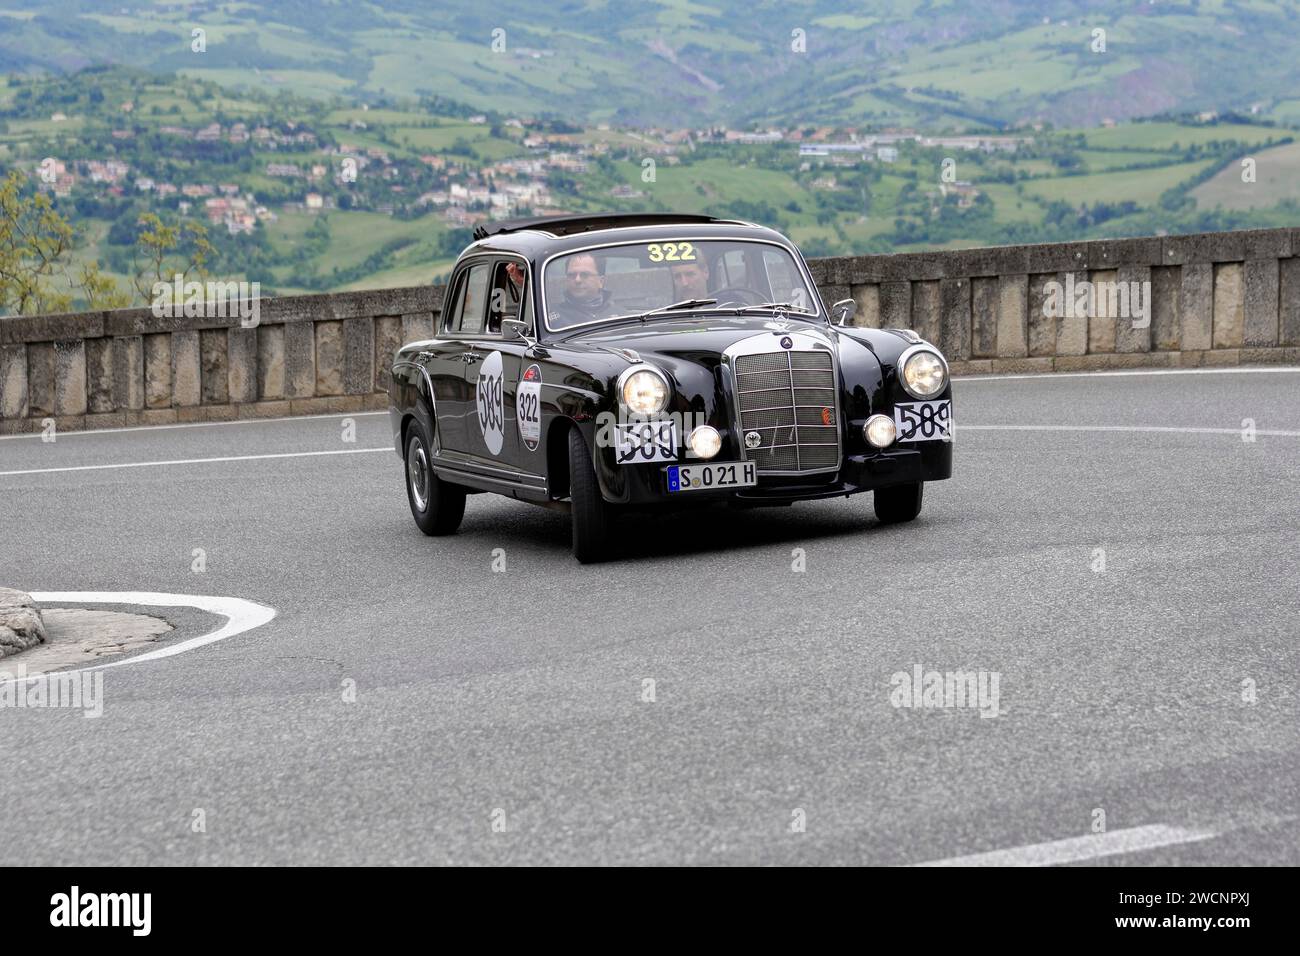 Mille Miglia 2014 ou 1000 Miglia, n ° 322, Mercedes-Benz 220a, construit en 1955, course de voitures classiques, Saint-Marin, Italie Banque D'Images